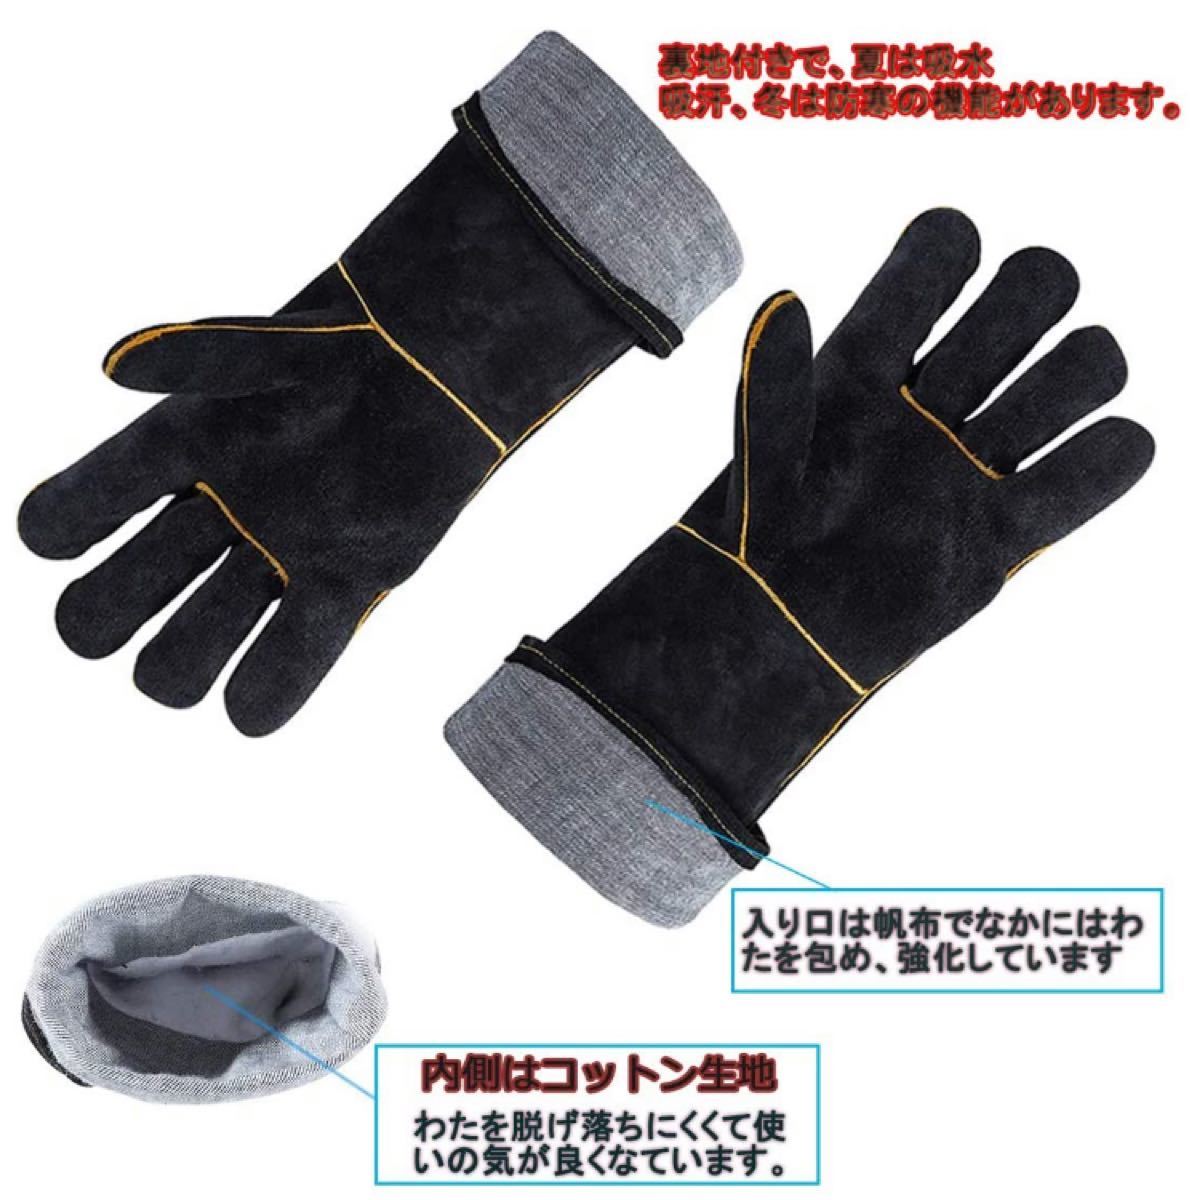 耐熱グローブ キャンプグローブ bbq 手袋 柔らかい 耐切創 使いやすさ